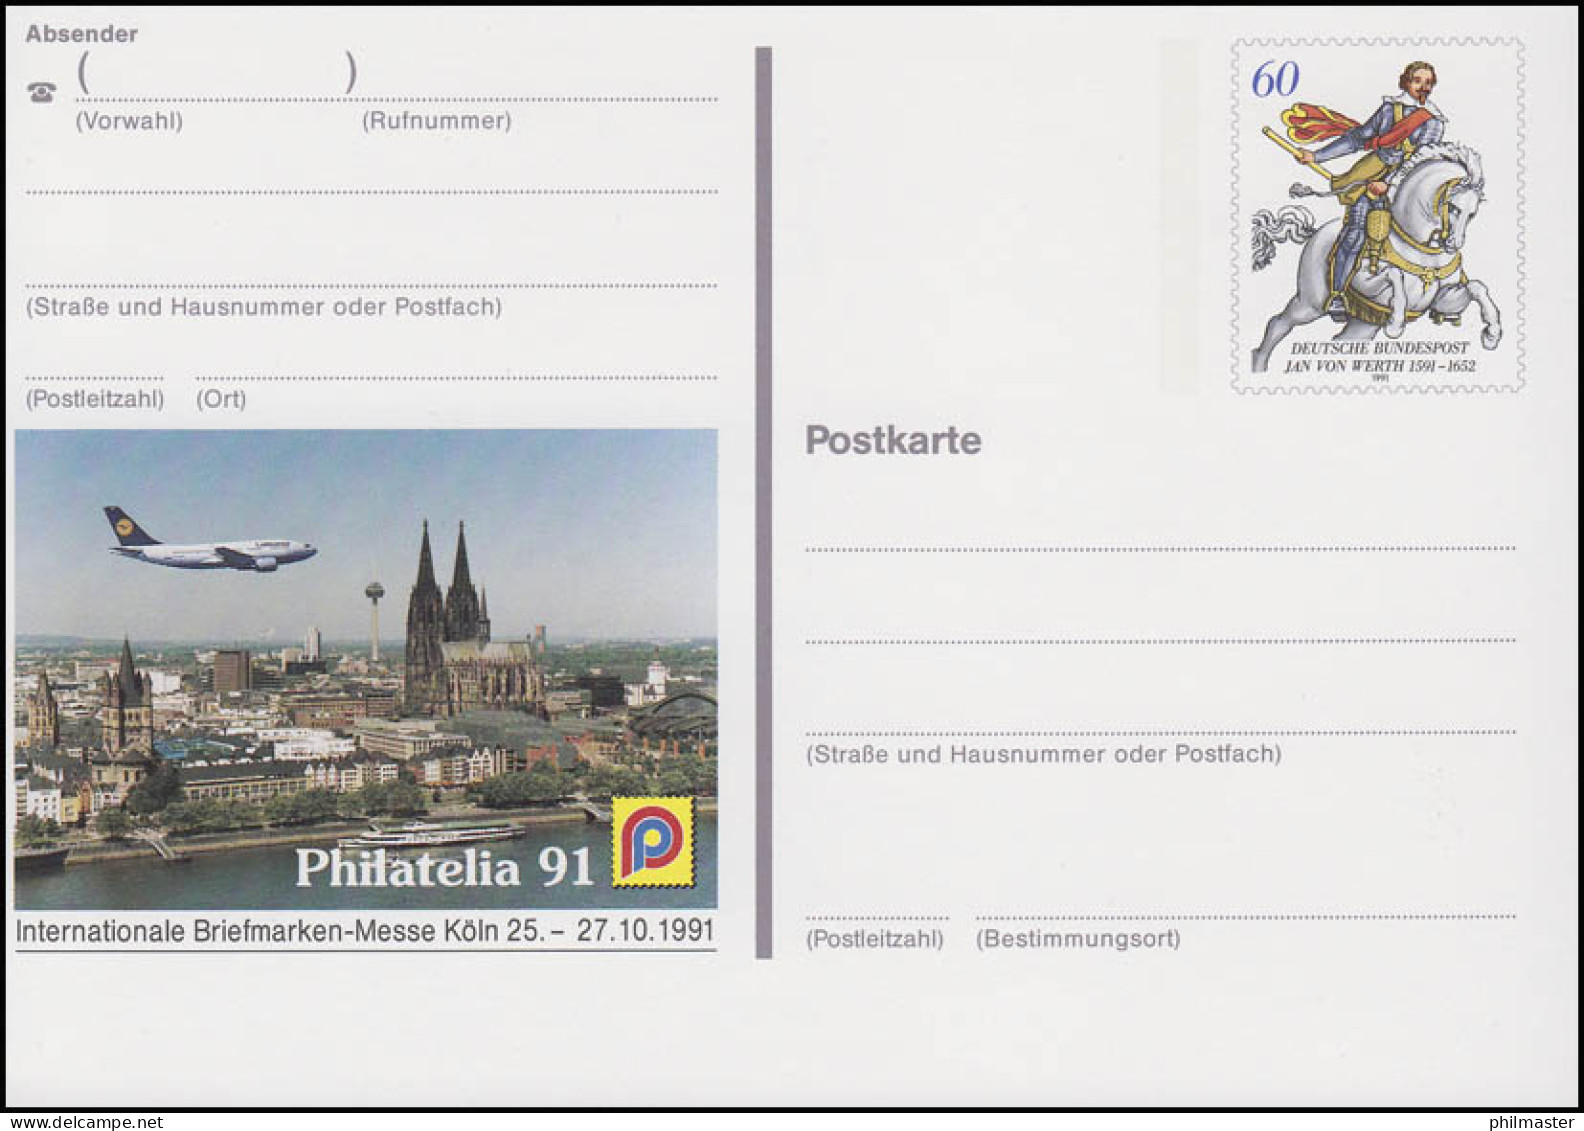 PSo 25 Briefmarken-Messe PHILATELIA Köln 1991, ** - Postkarten - Ungebraucht